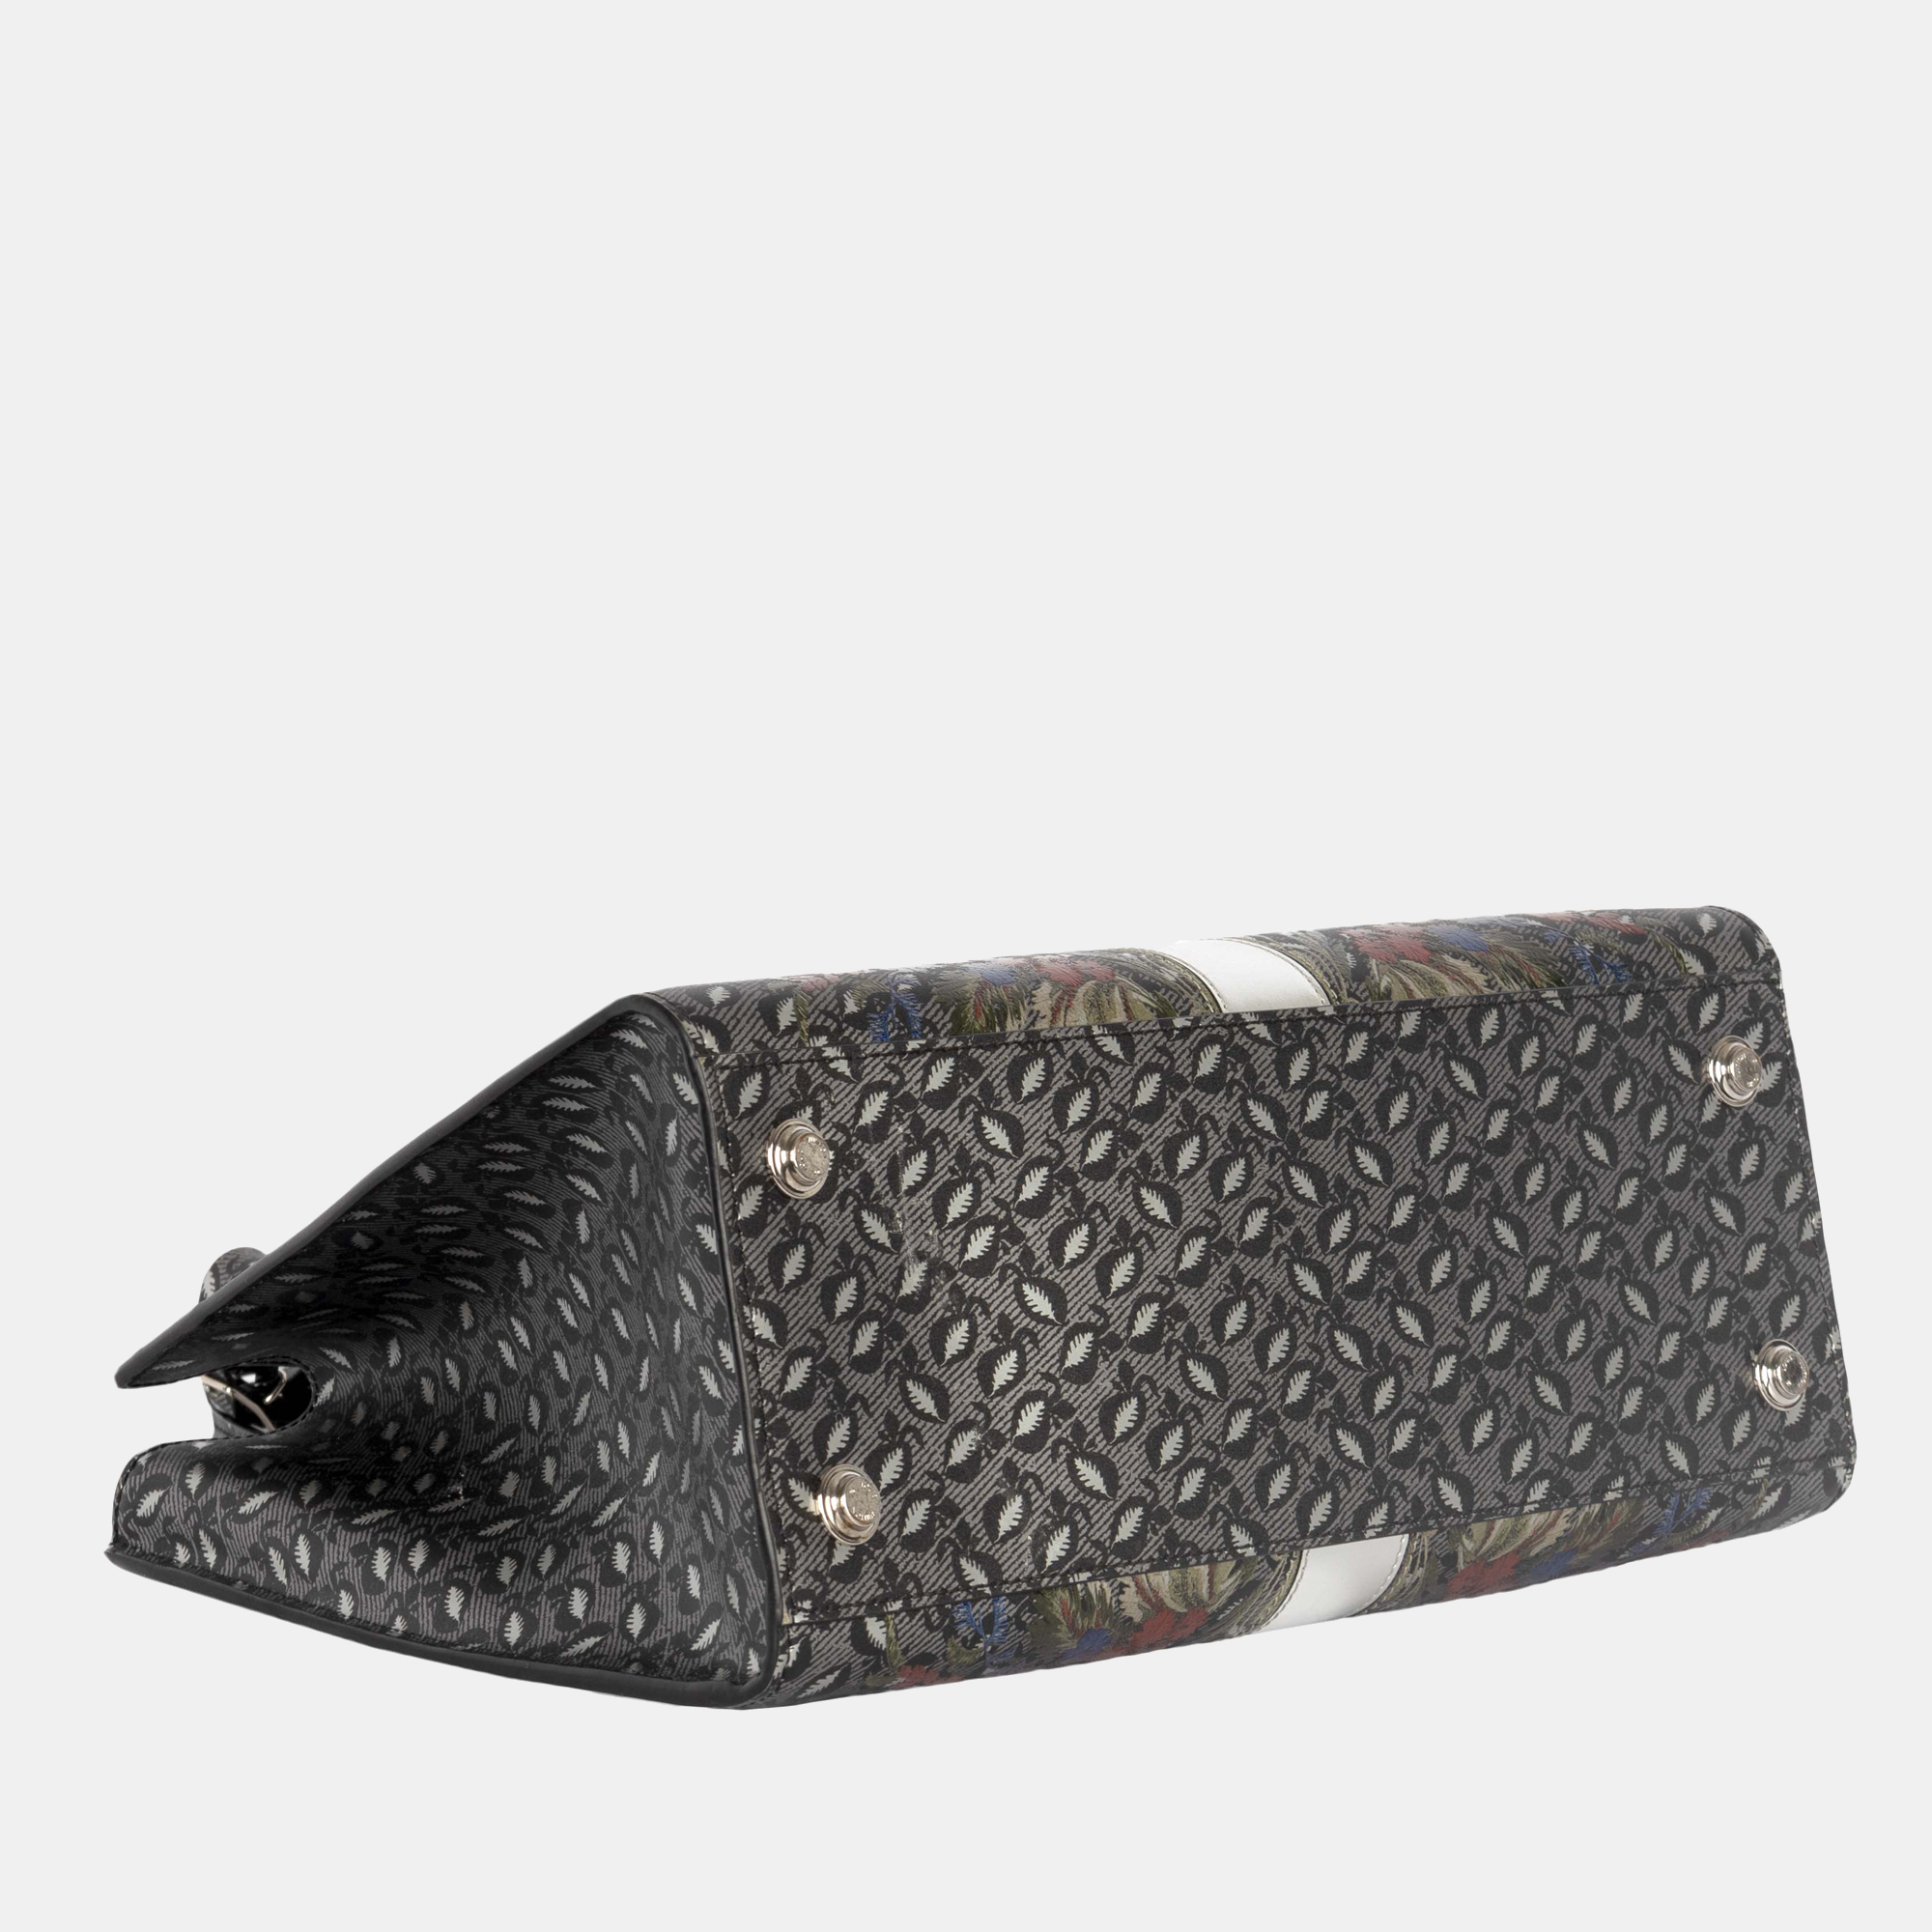 Louis Vuitton Epi Floral City Steamer MM Shoulder Handbag